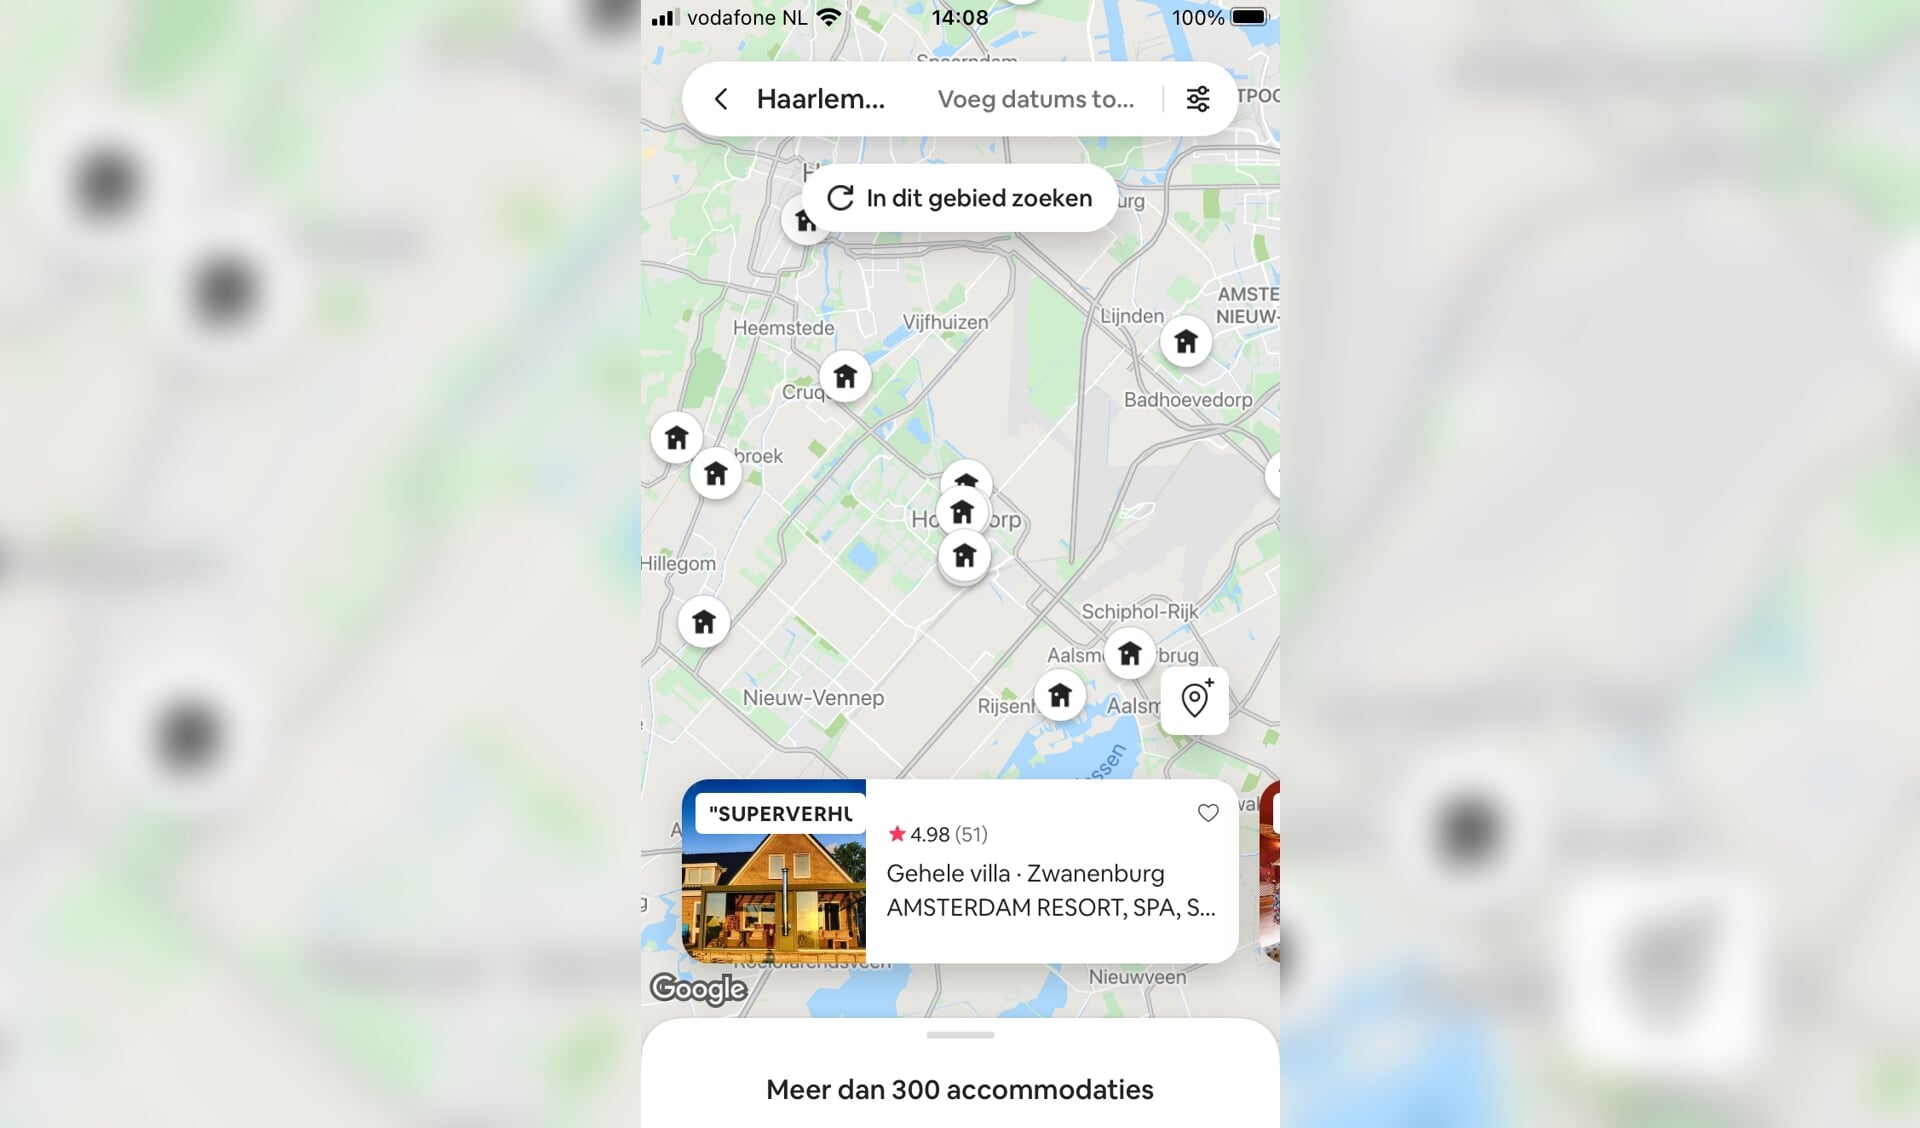 Dit zijn enkele locaties in Haarlemmermeer die momenteel via Airbnb worden aangeboden.